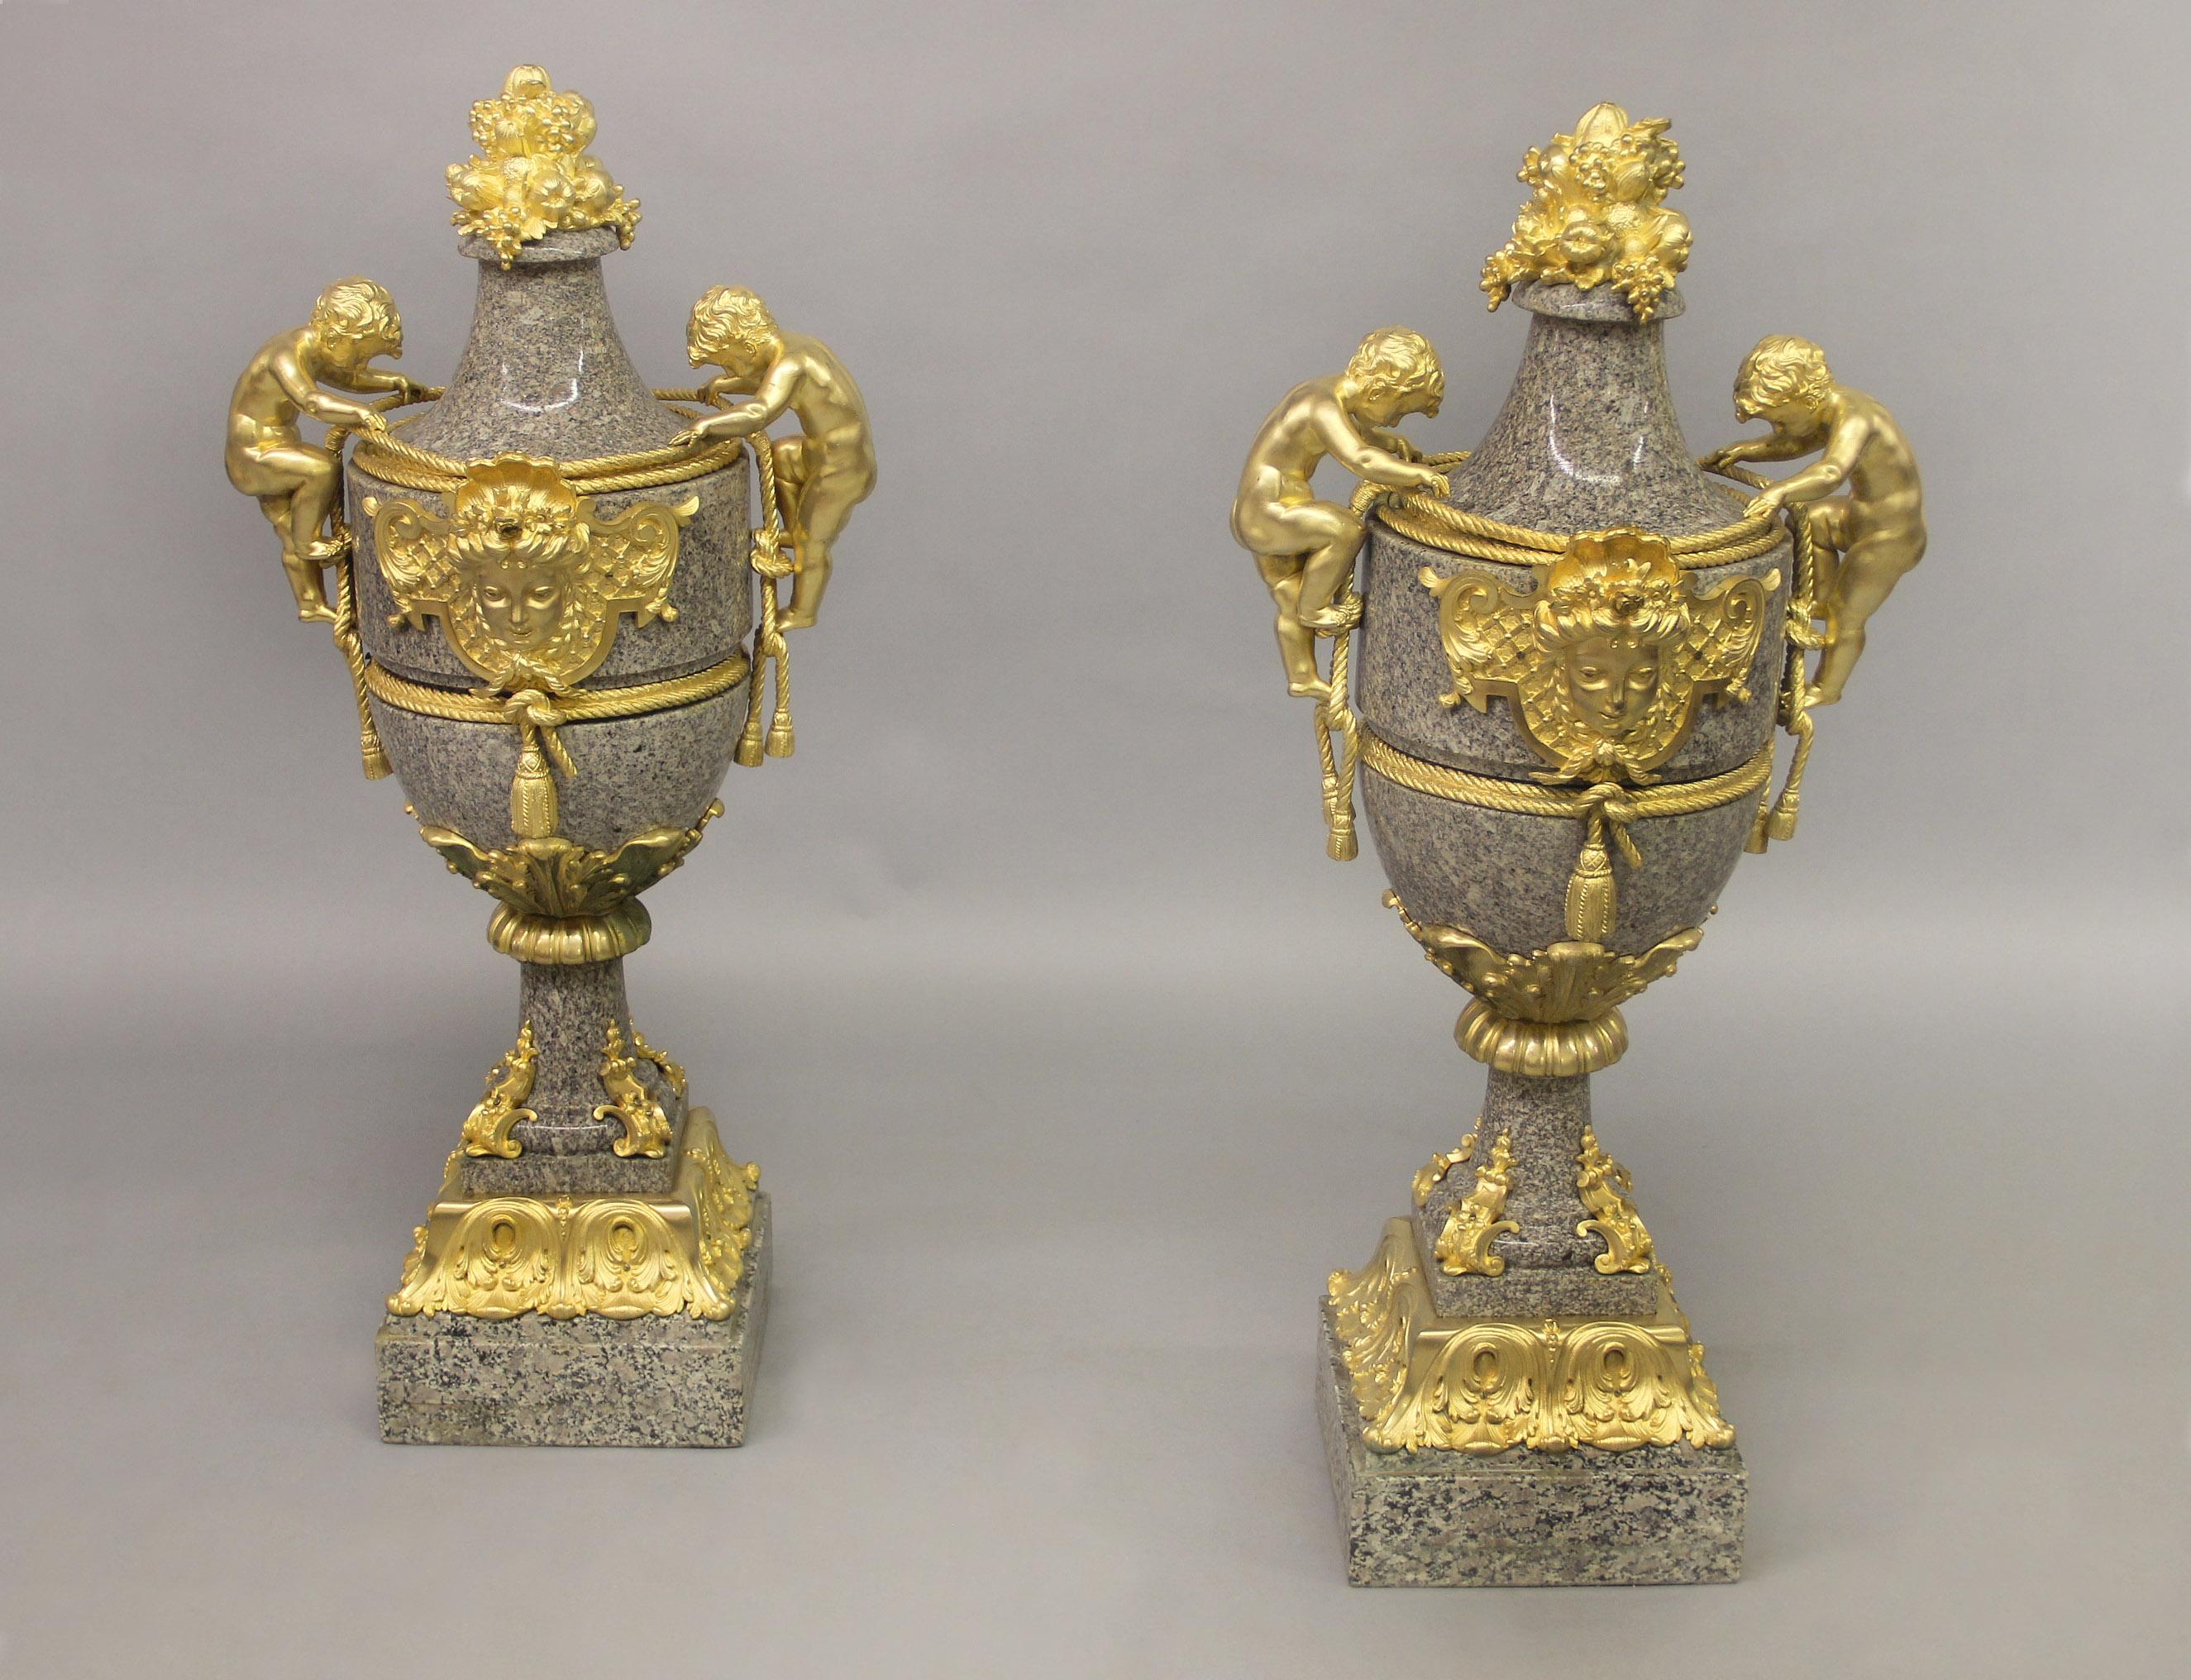 Ein Paar großer Granitvasen aus vergoldeter Bronze des späten 19. Jahrhunderts in hervorragender Qualität

Jede Vase ist umgeben von Bronzeseilen und -quasten mit großen, kletternden Puttengriffen, in der Mitte eine schöne weibliche Maske, der